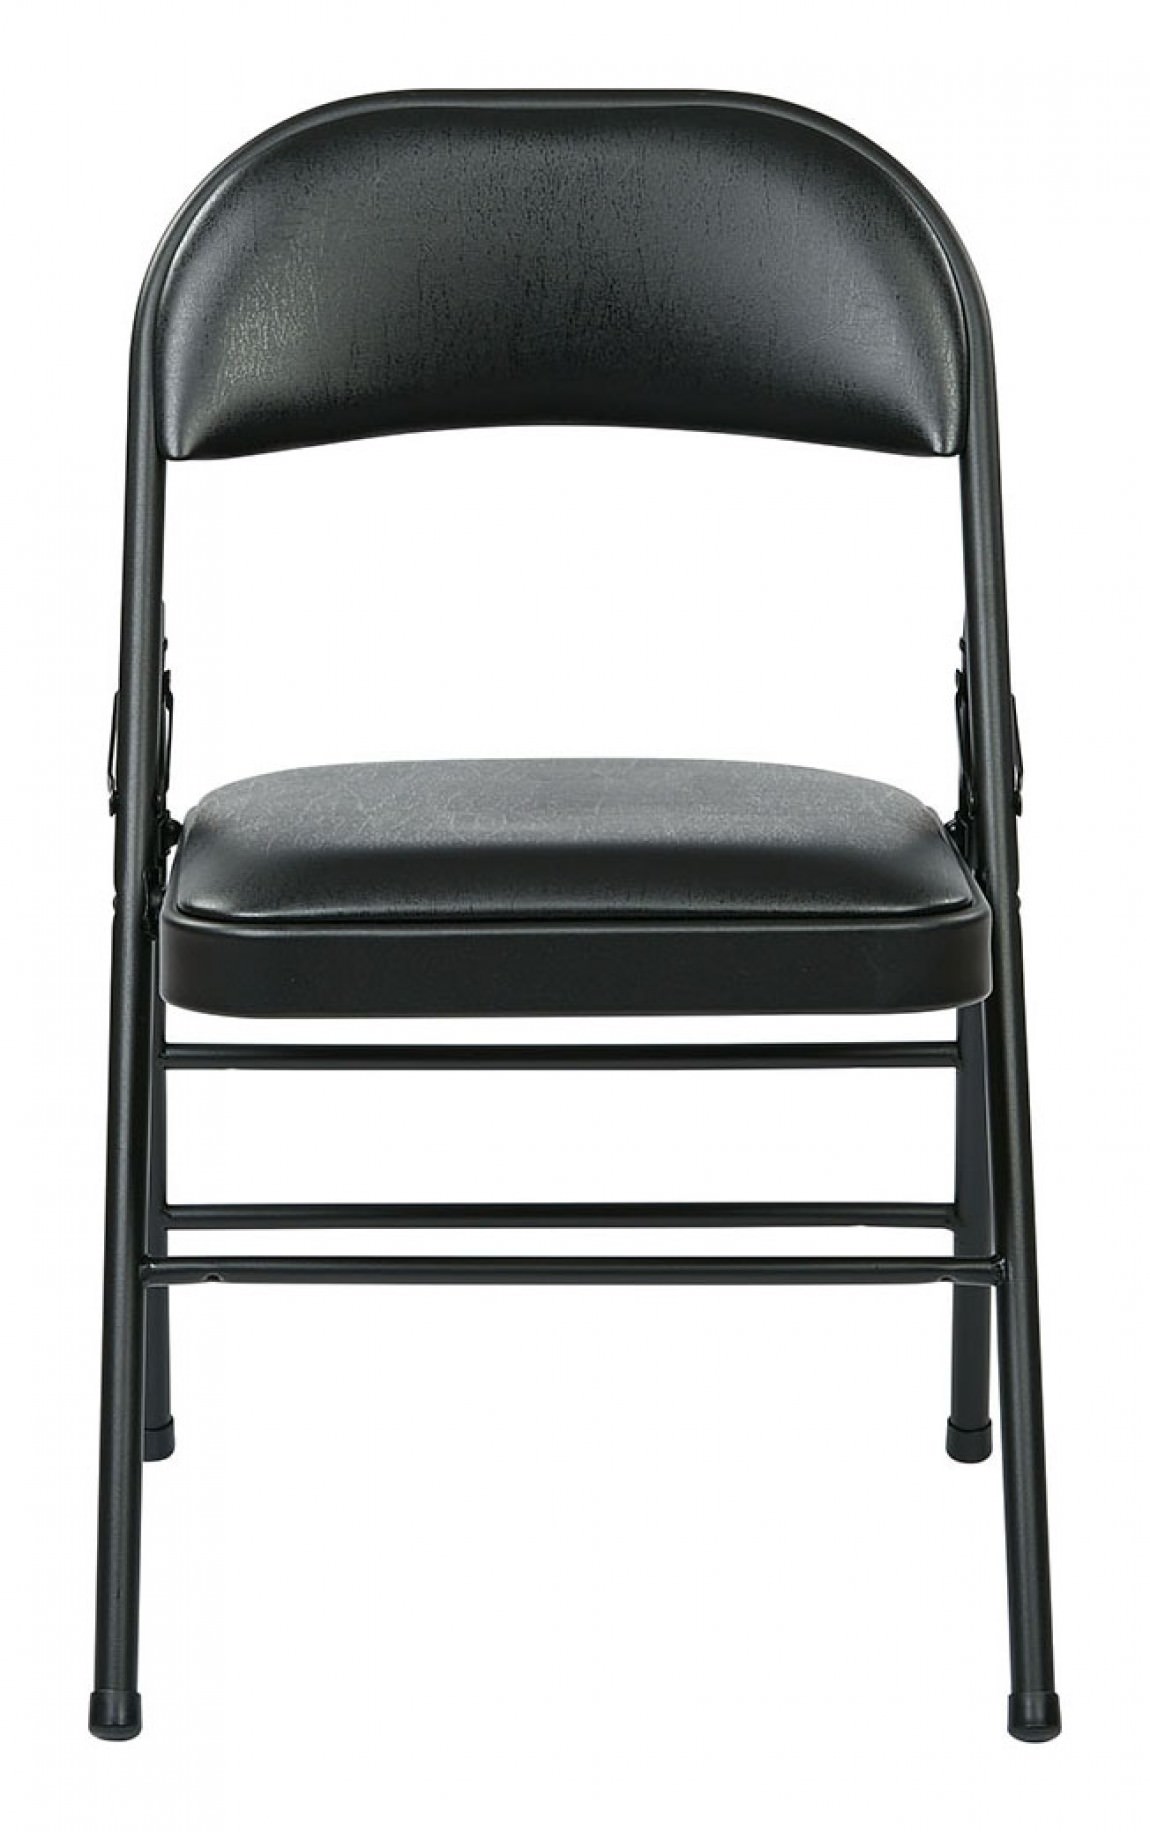 https://madisonliquidators.com/images/p/1150/24905-padded-folding-chair-4-pack-4.jpg